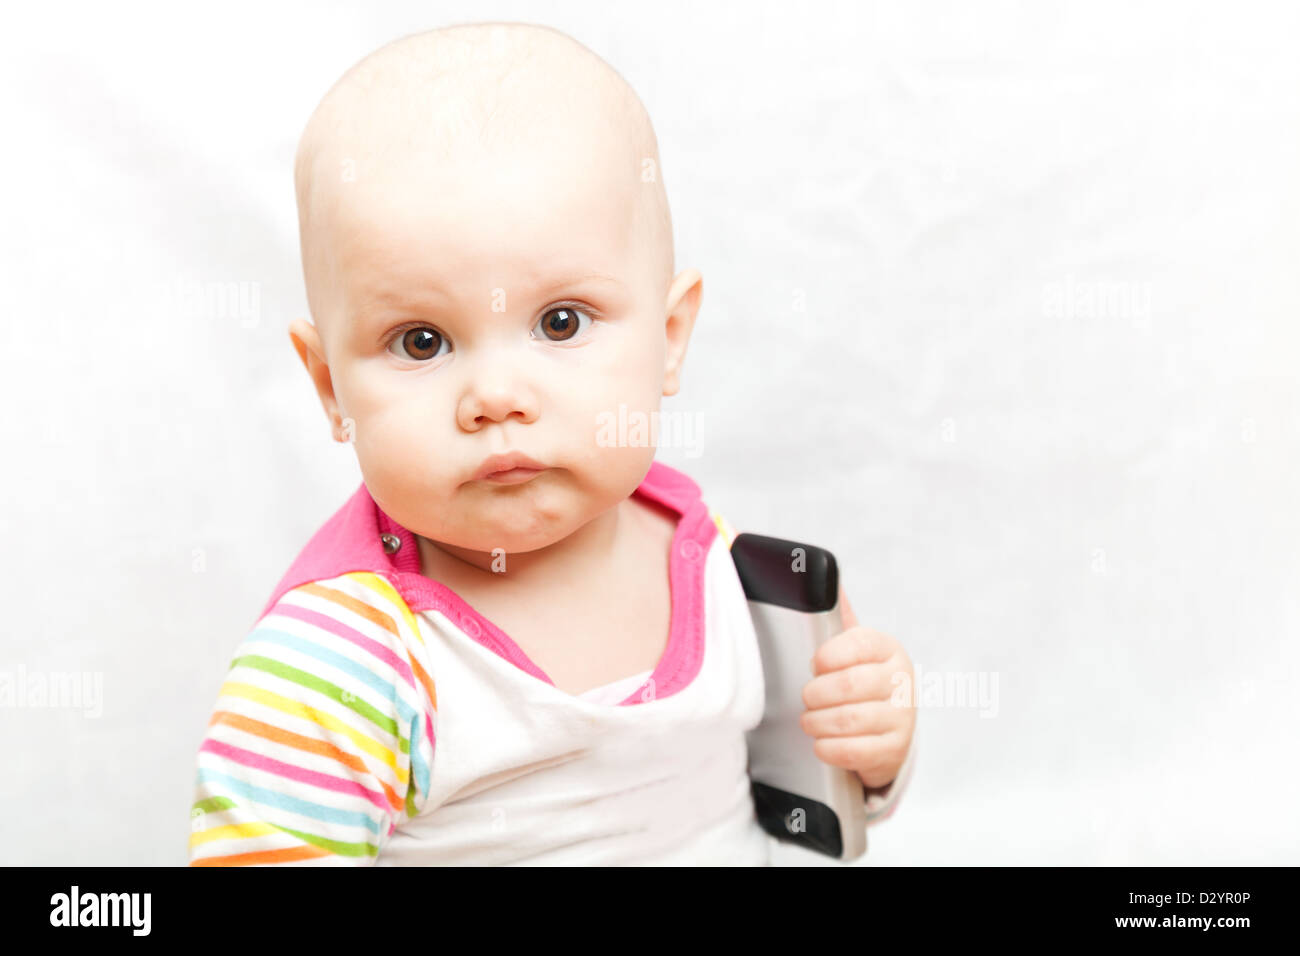 Petit bébé dans des vêtements à rayures occasionnels joue avec un téléphone mobile Banque D'Images